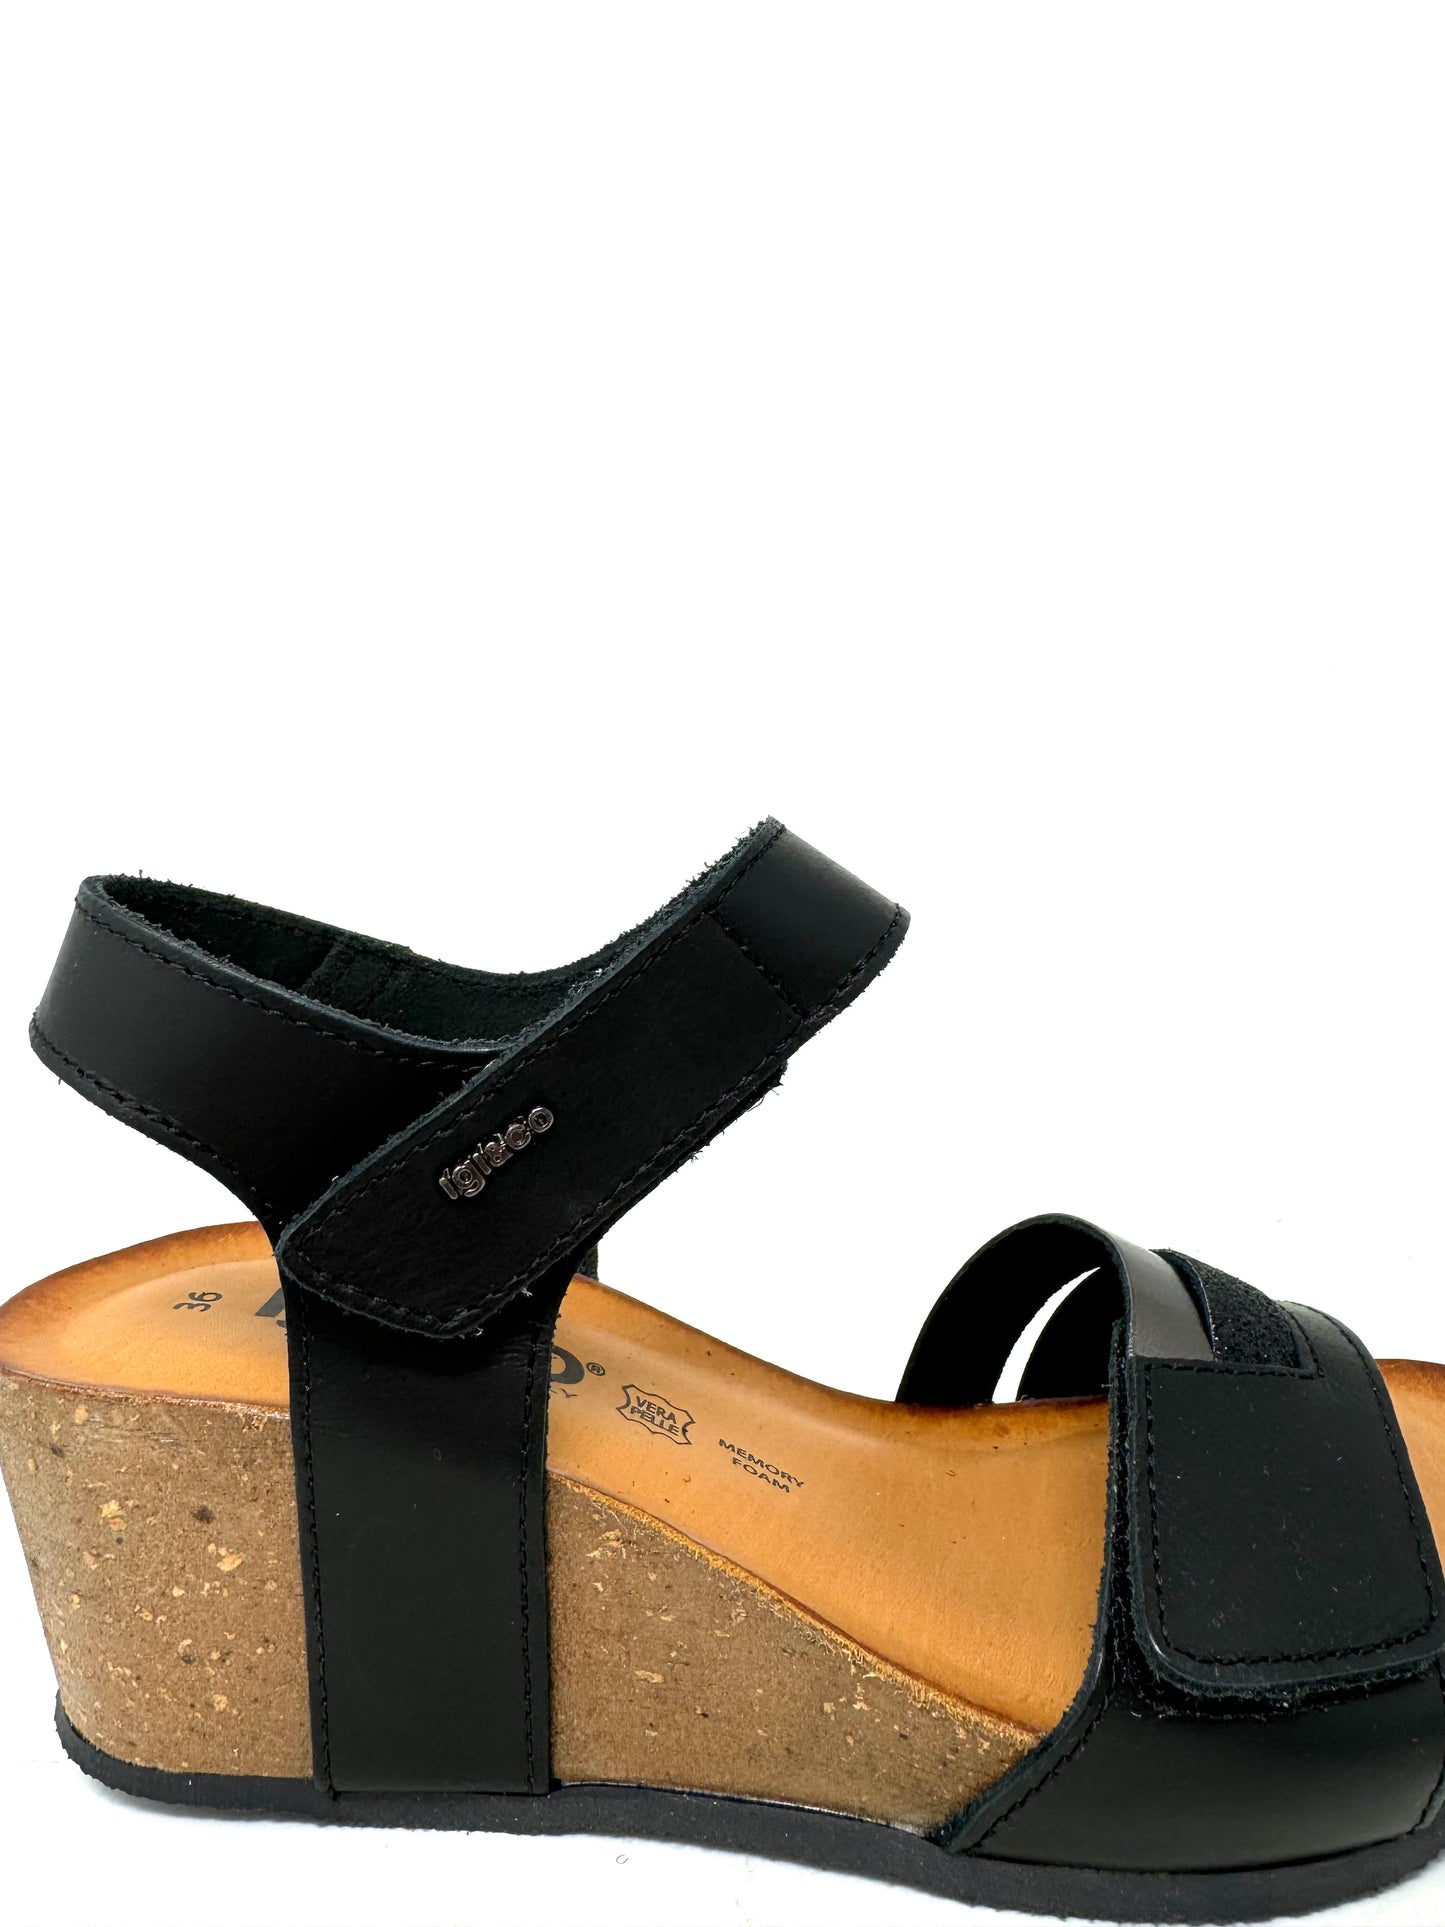 Sandalo zeppa in pelle nero - 5699000